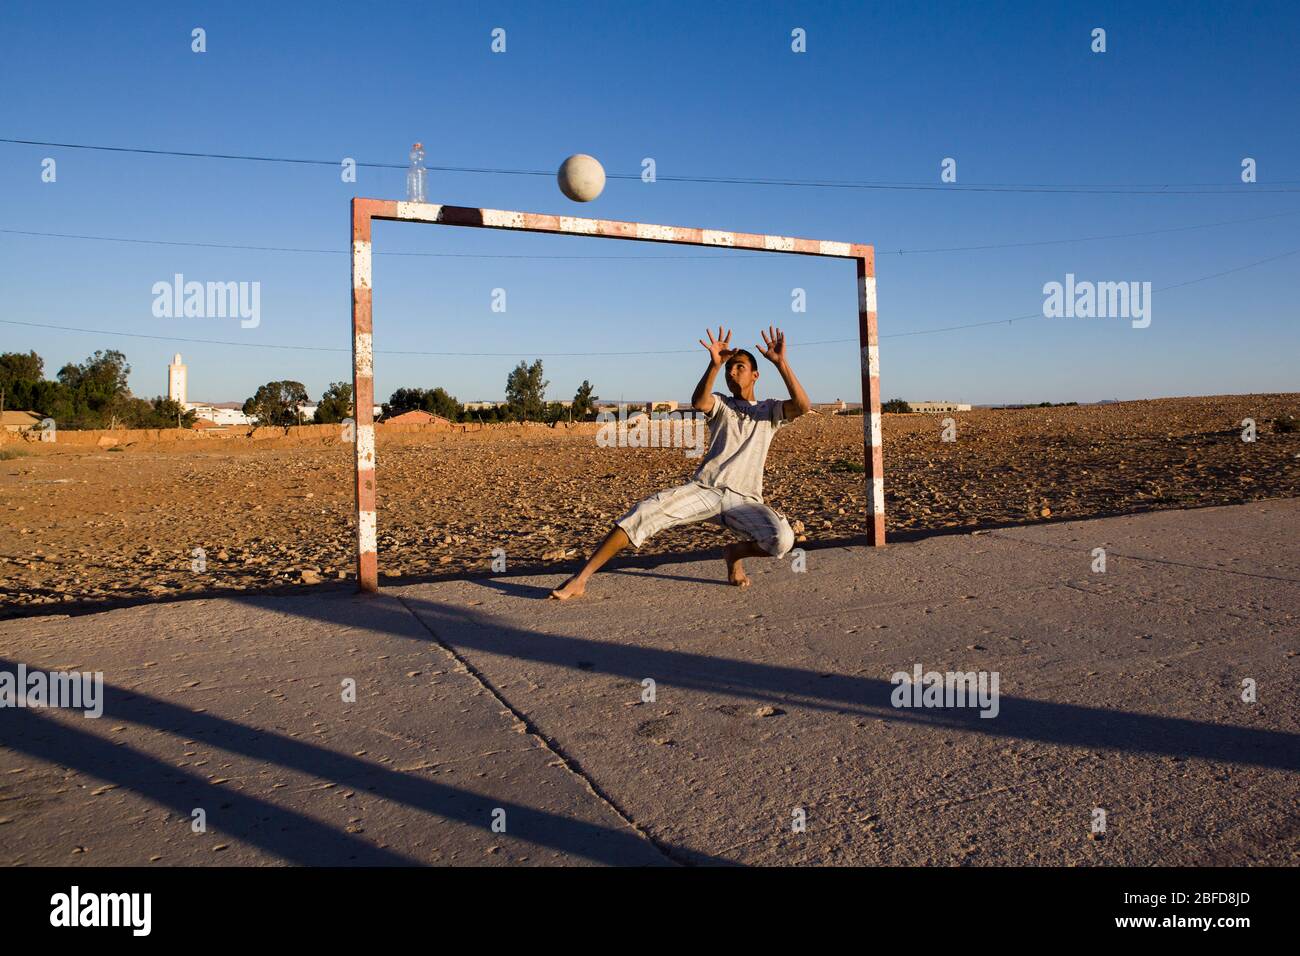 Garçon marocain jouant gardien de but au Sahara occidental, Maroc. Banque D'Images